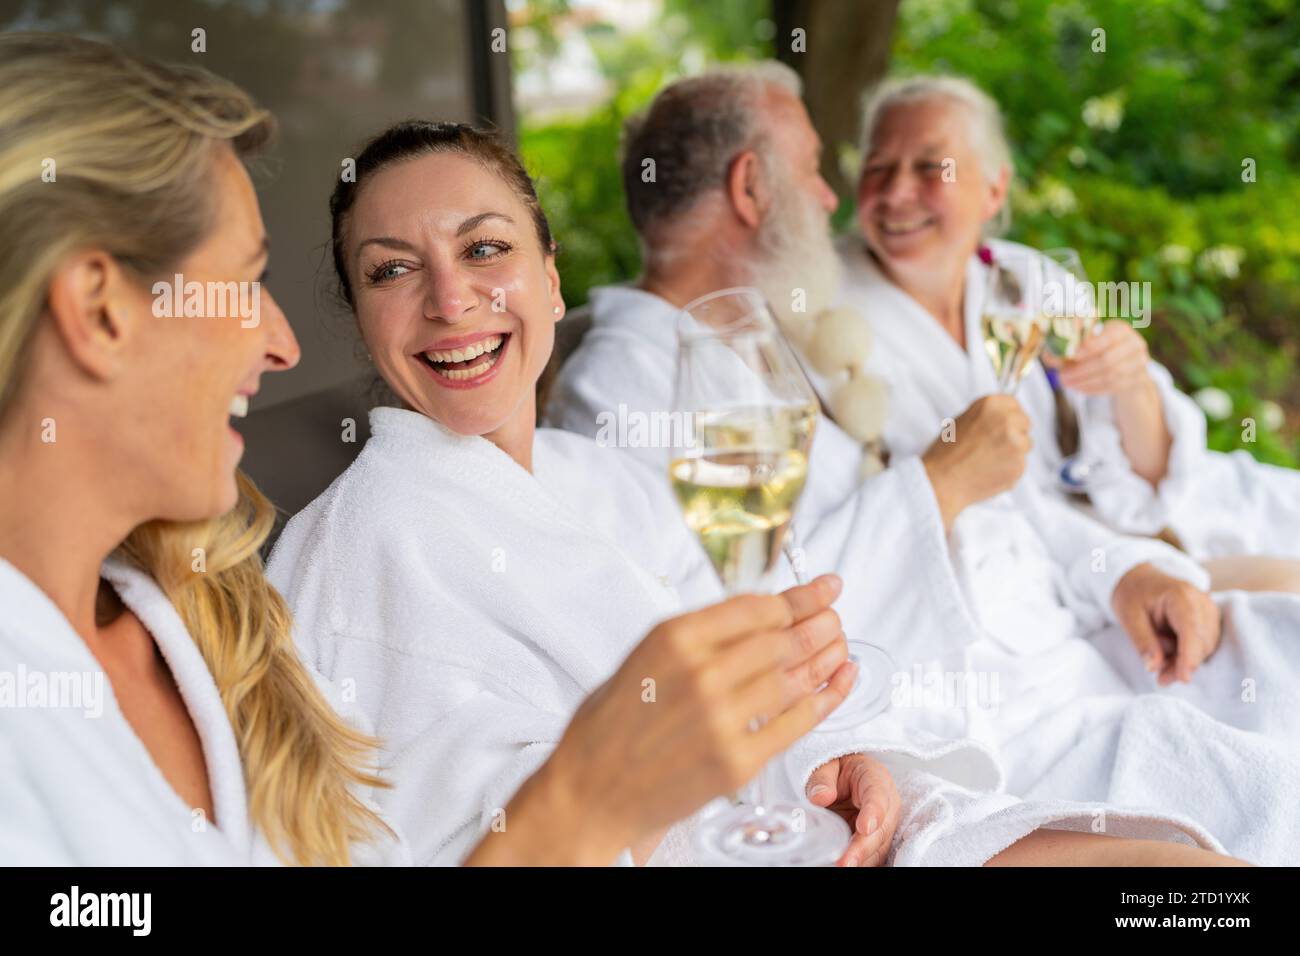 Gruppe von Menschen in weißen Bademänteln lachend und mit Sektgläsern in der Hand, die auf einer Liege in einem Wellnesshotel feiern Stockfoto